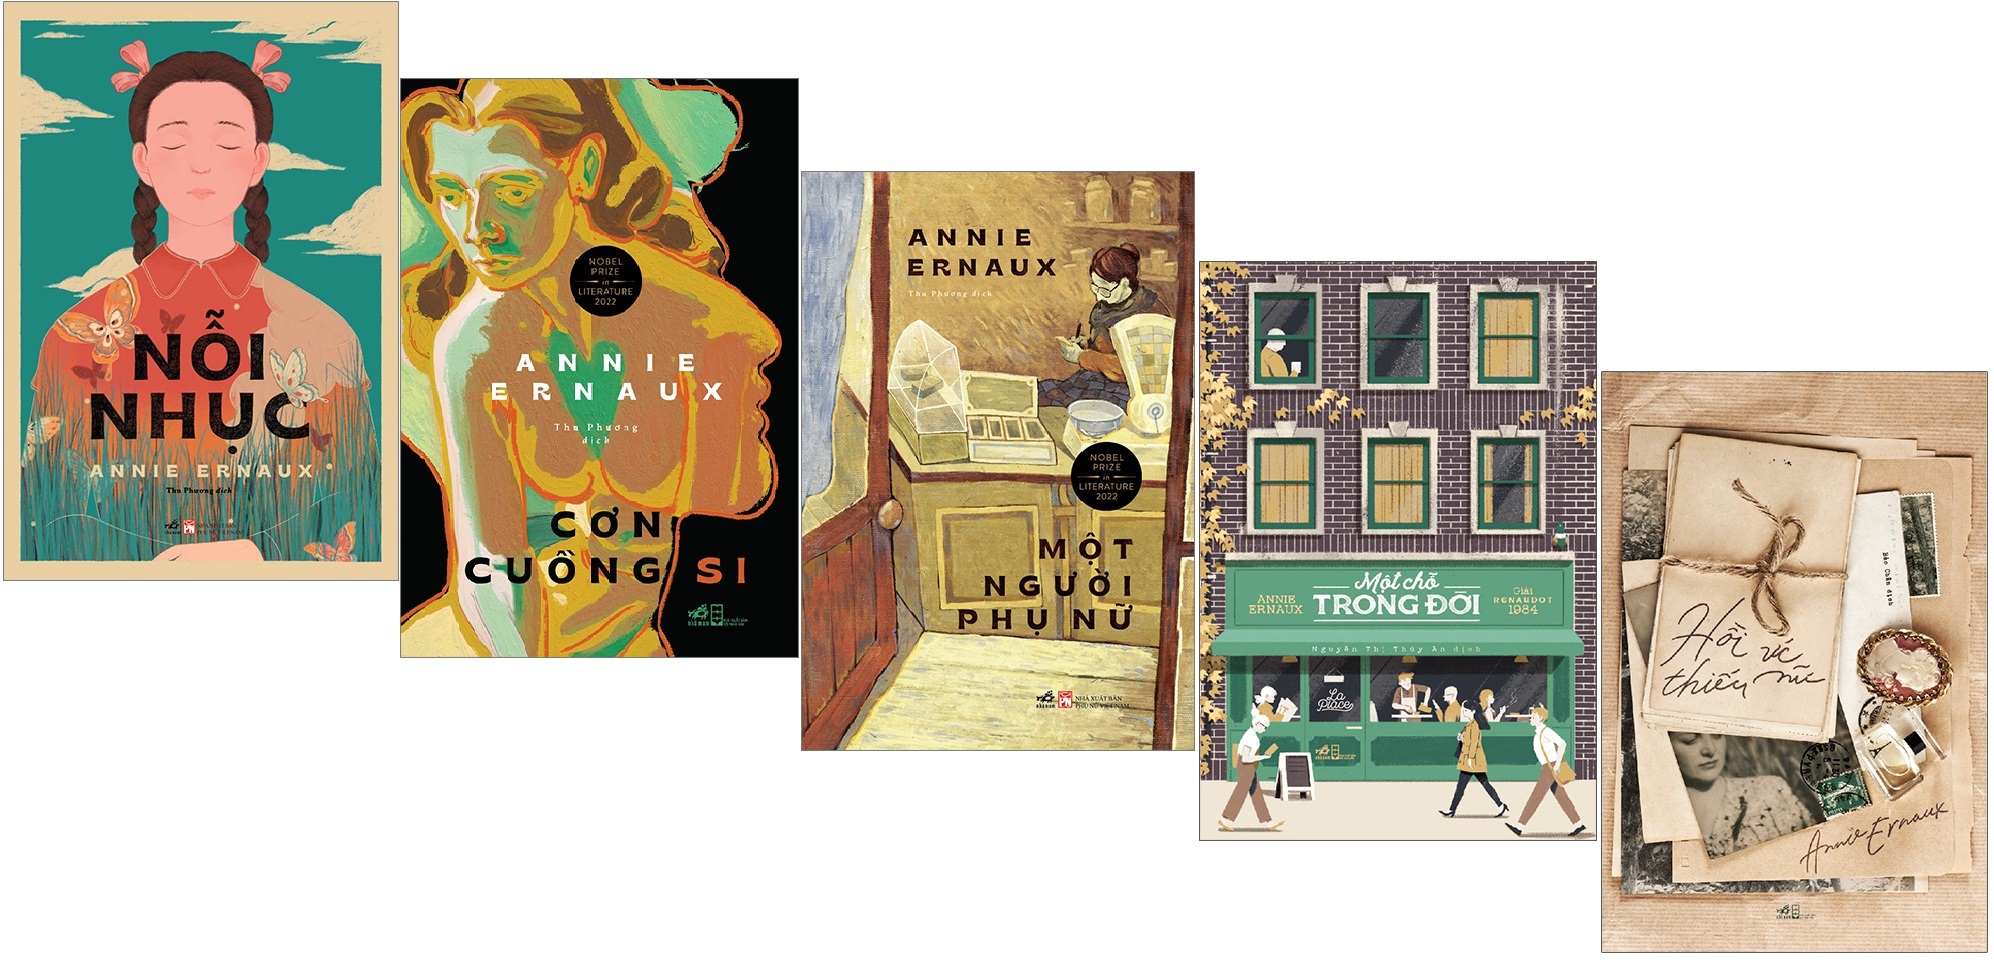 Combo 5 cuốn sách của Annie Ernaux - Tác Giả Đoạt Giải Nobel Văn Chương Năm 2022: Một Chỗ Trong Đời + Hồi Ức Thiếu Nữ + Một Người Phụ Nữ + Cơn Cuồng Si + Nỗi Nhục